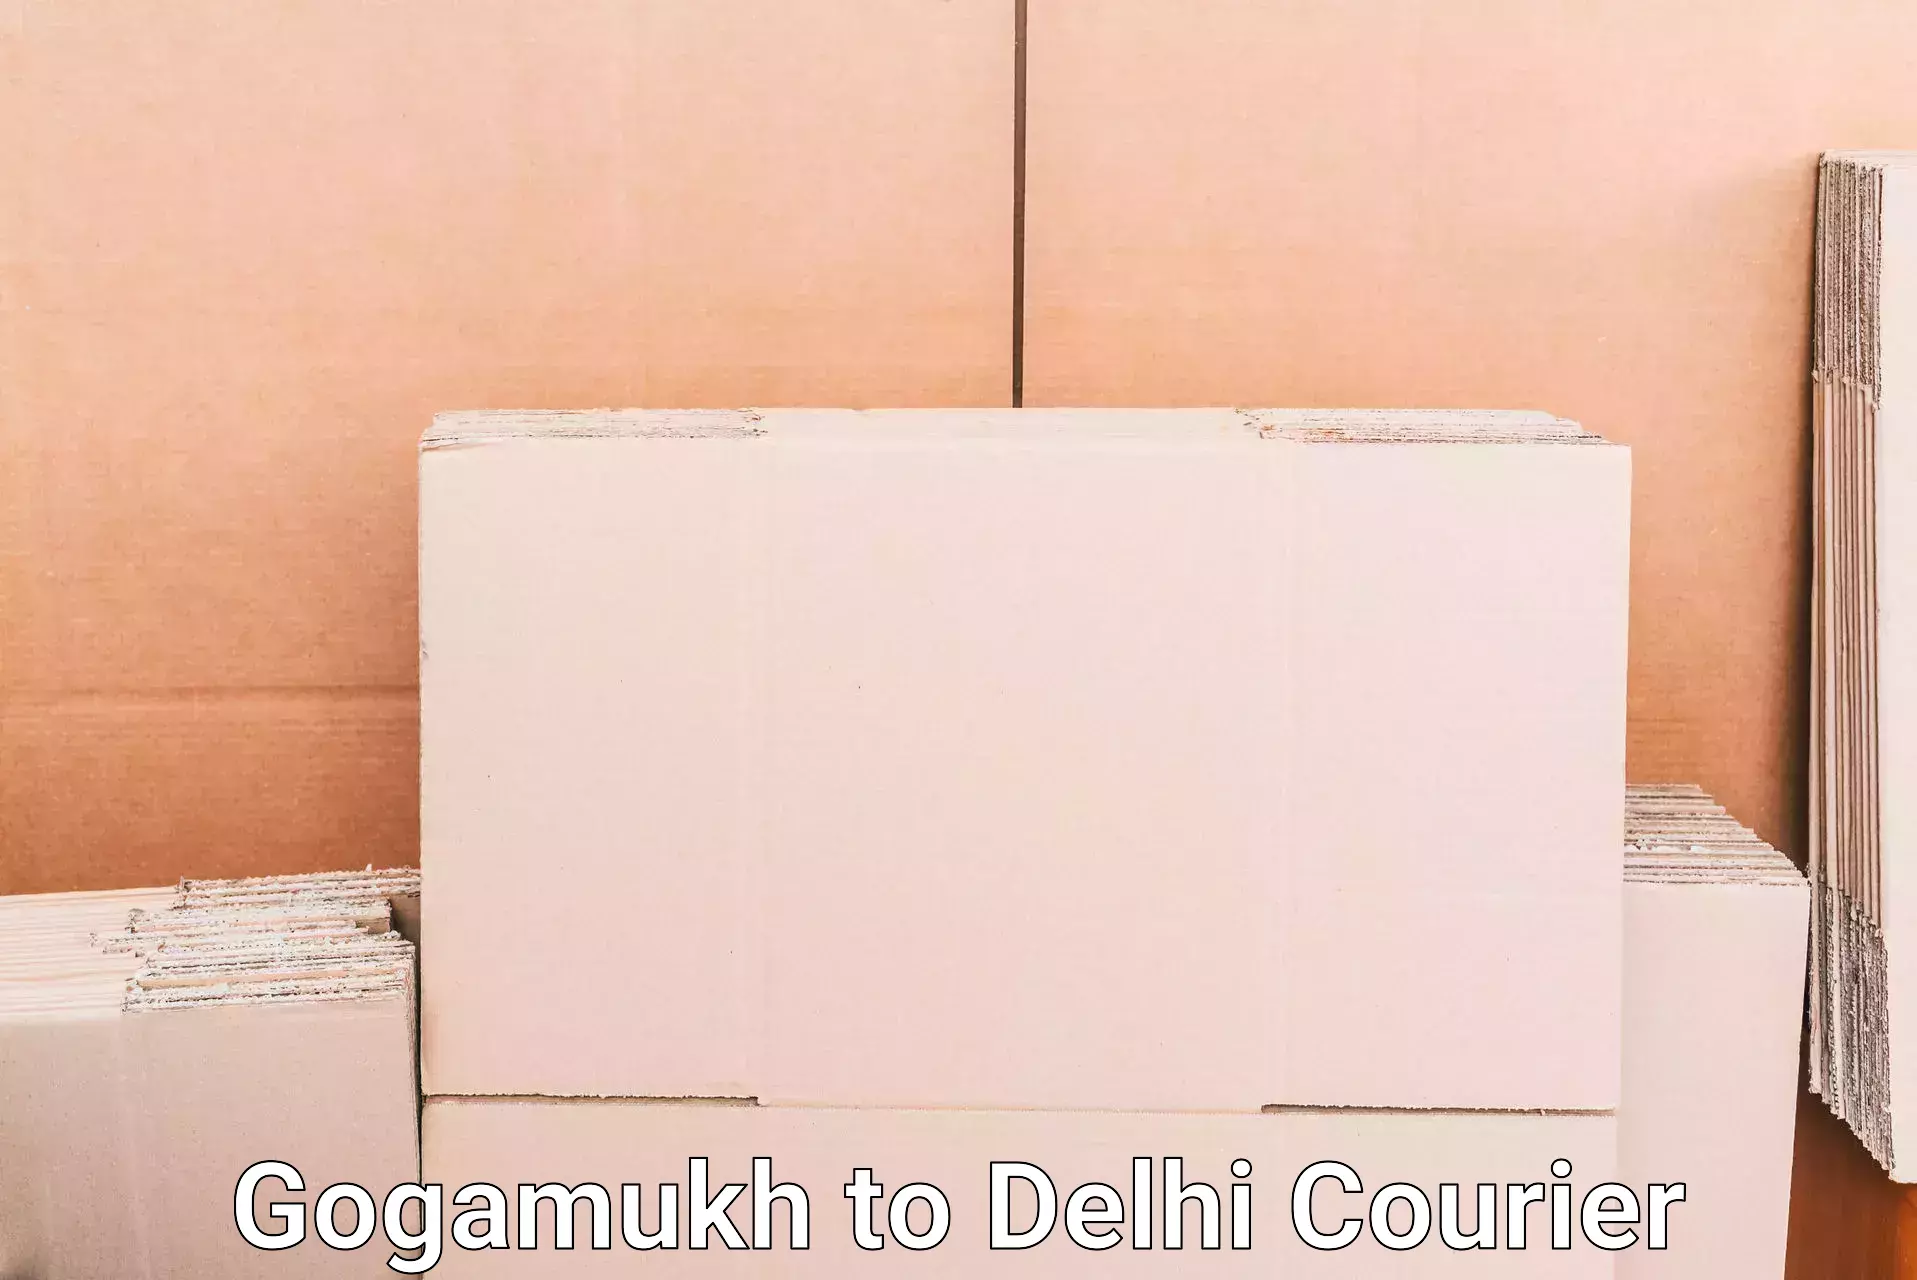 Door-to-door baggage service Gogamukh to Delhi